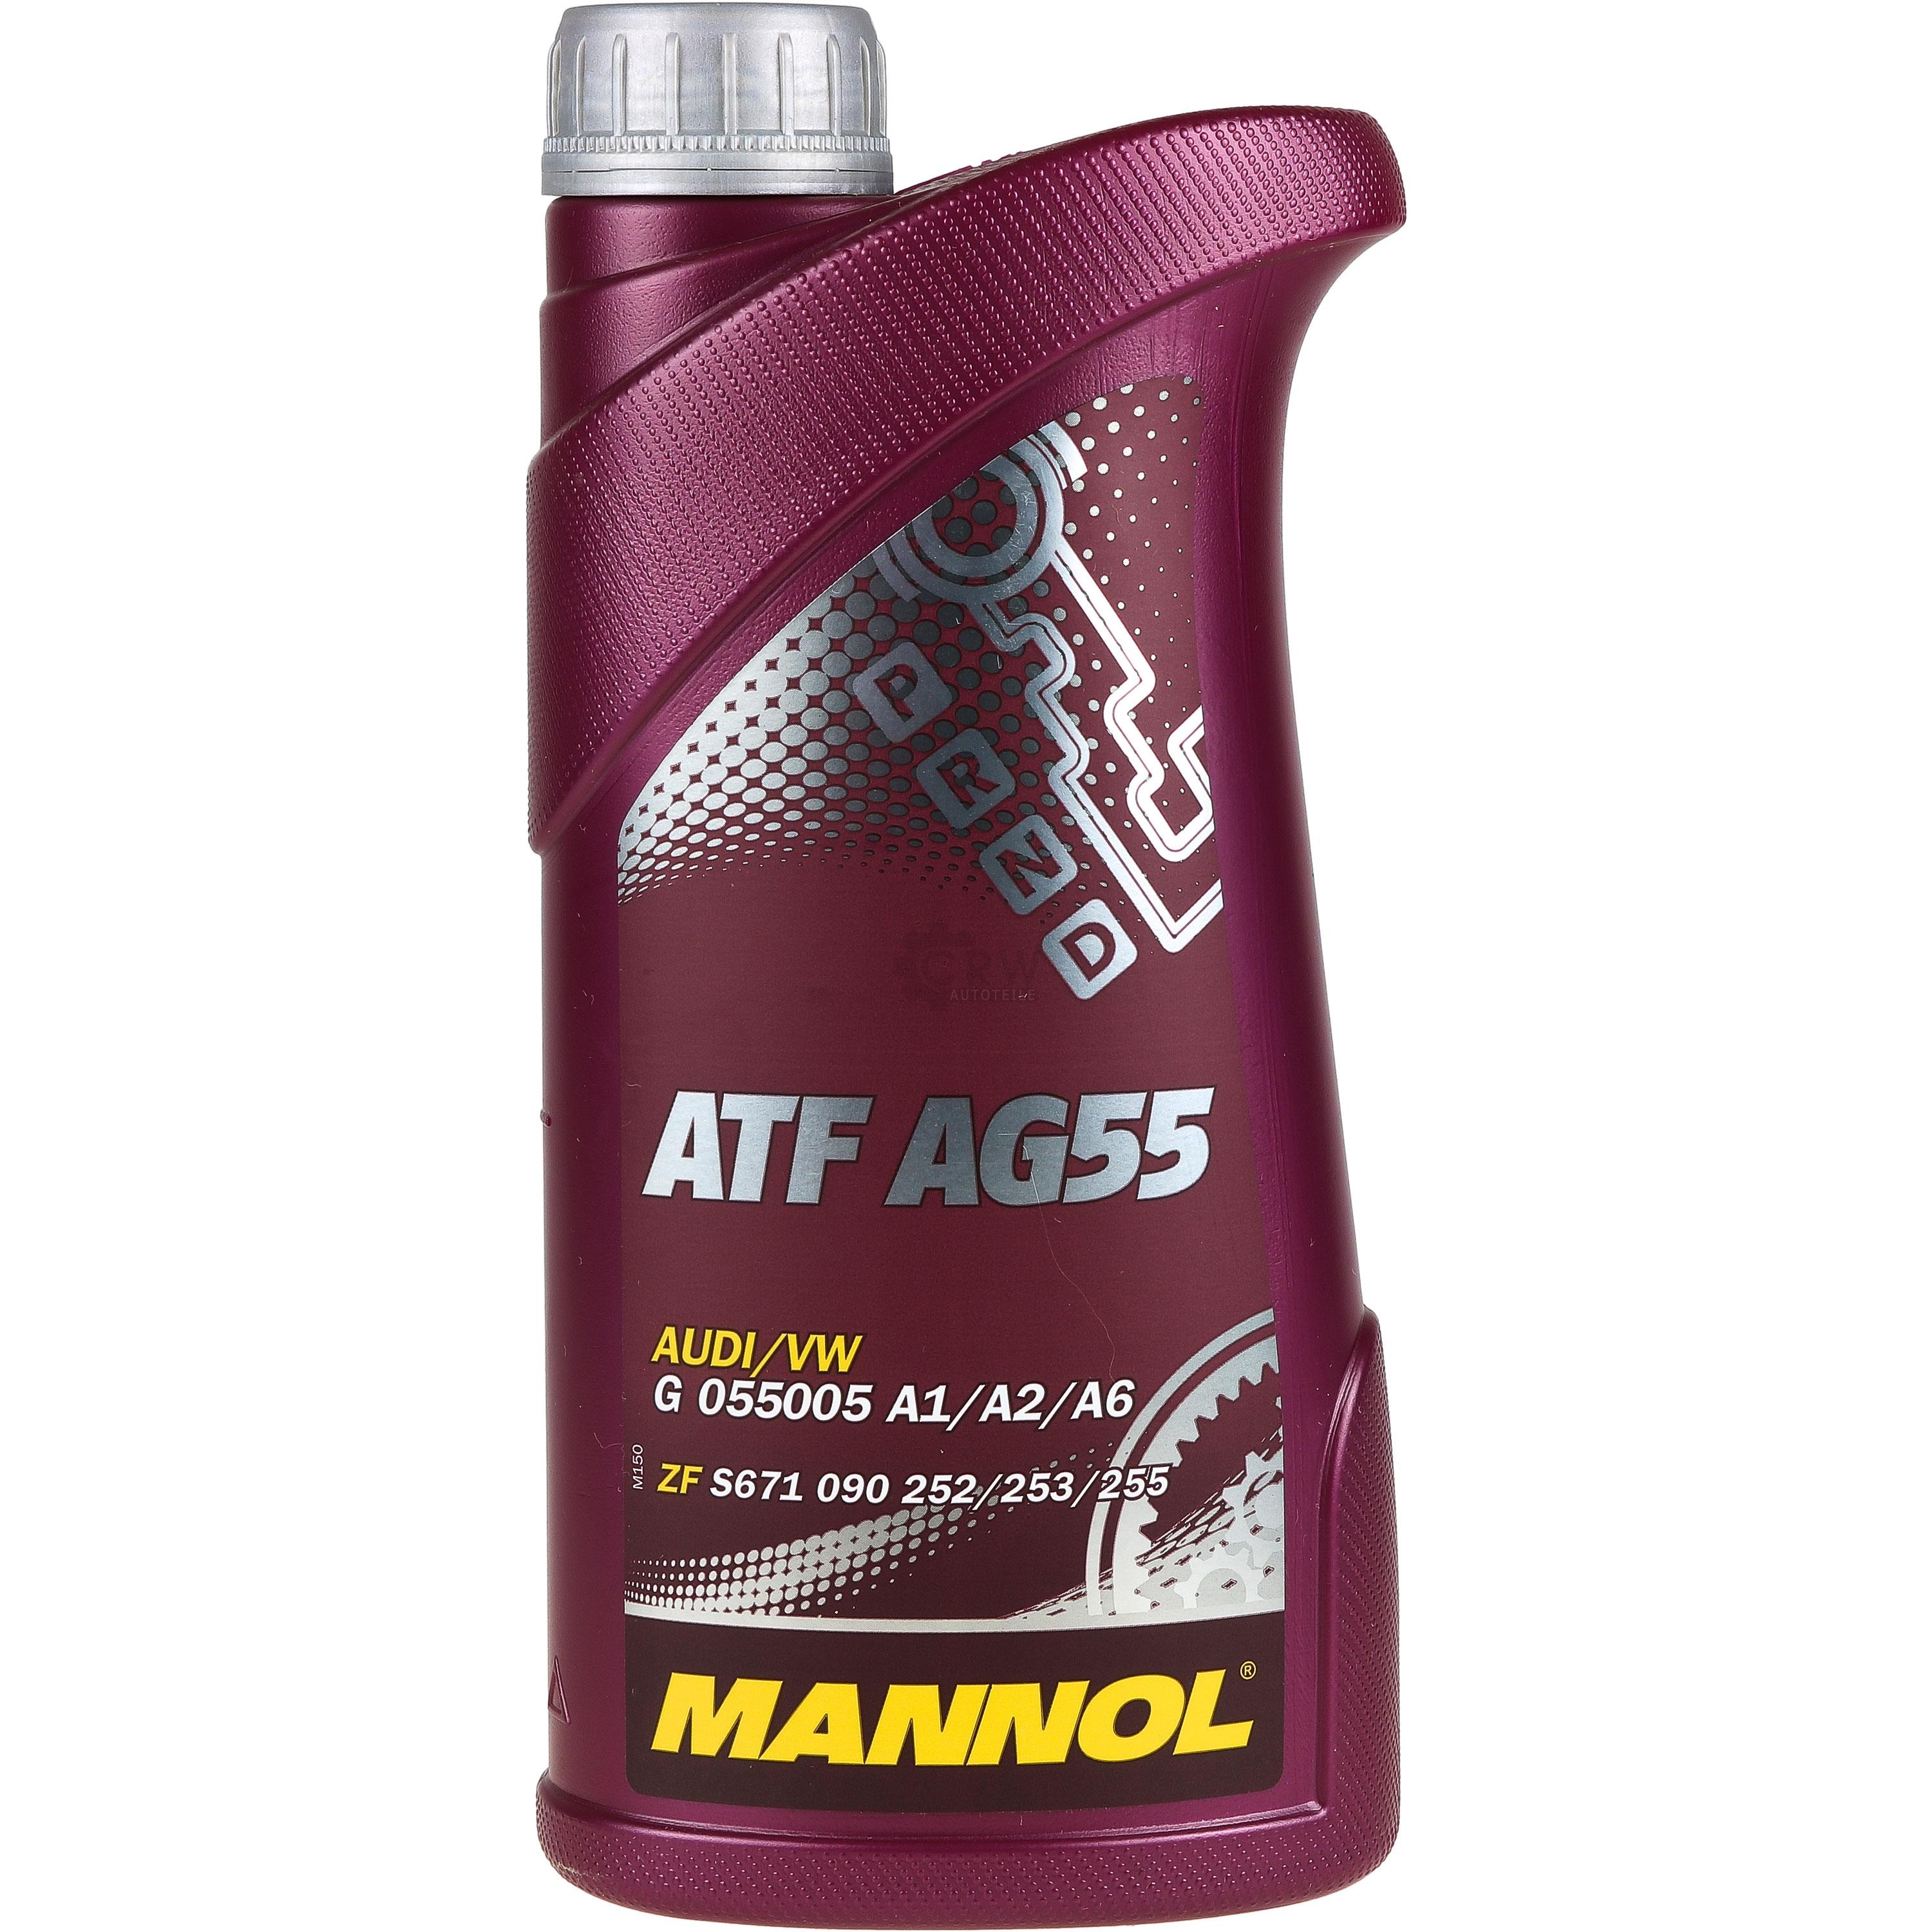 1 Liter MANNOL Hydrauliköl ATF AG55 Hydraulic Fluid Automatikgetriebeöl Gear